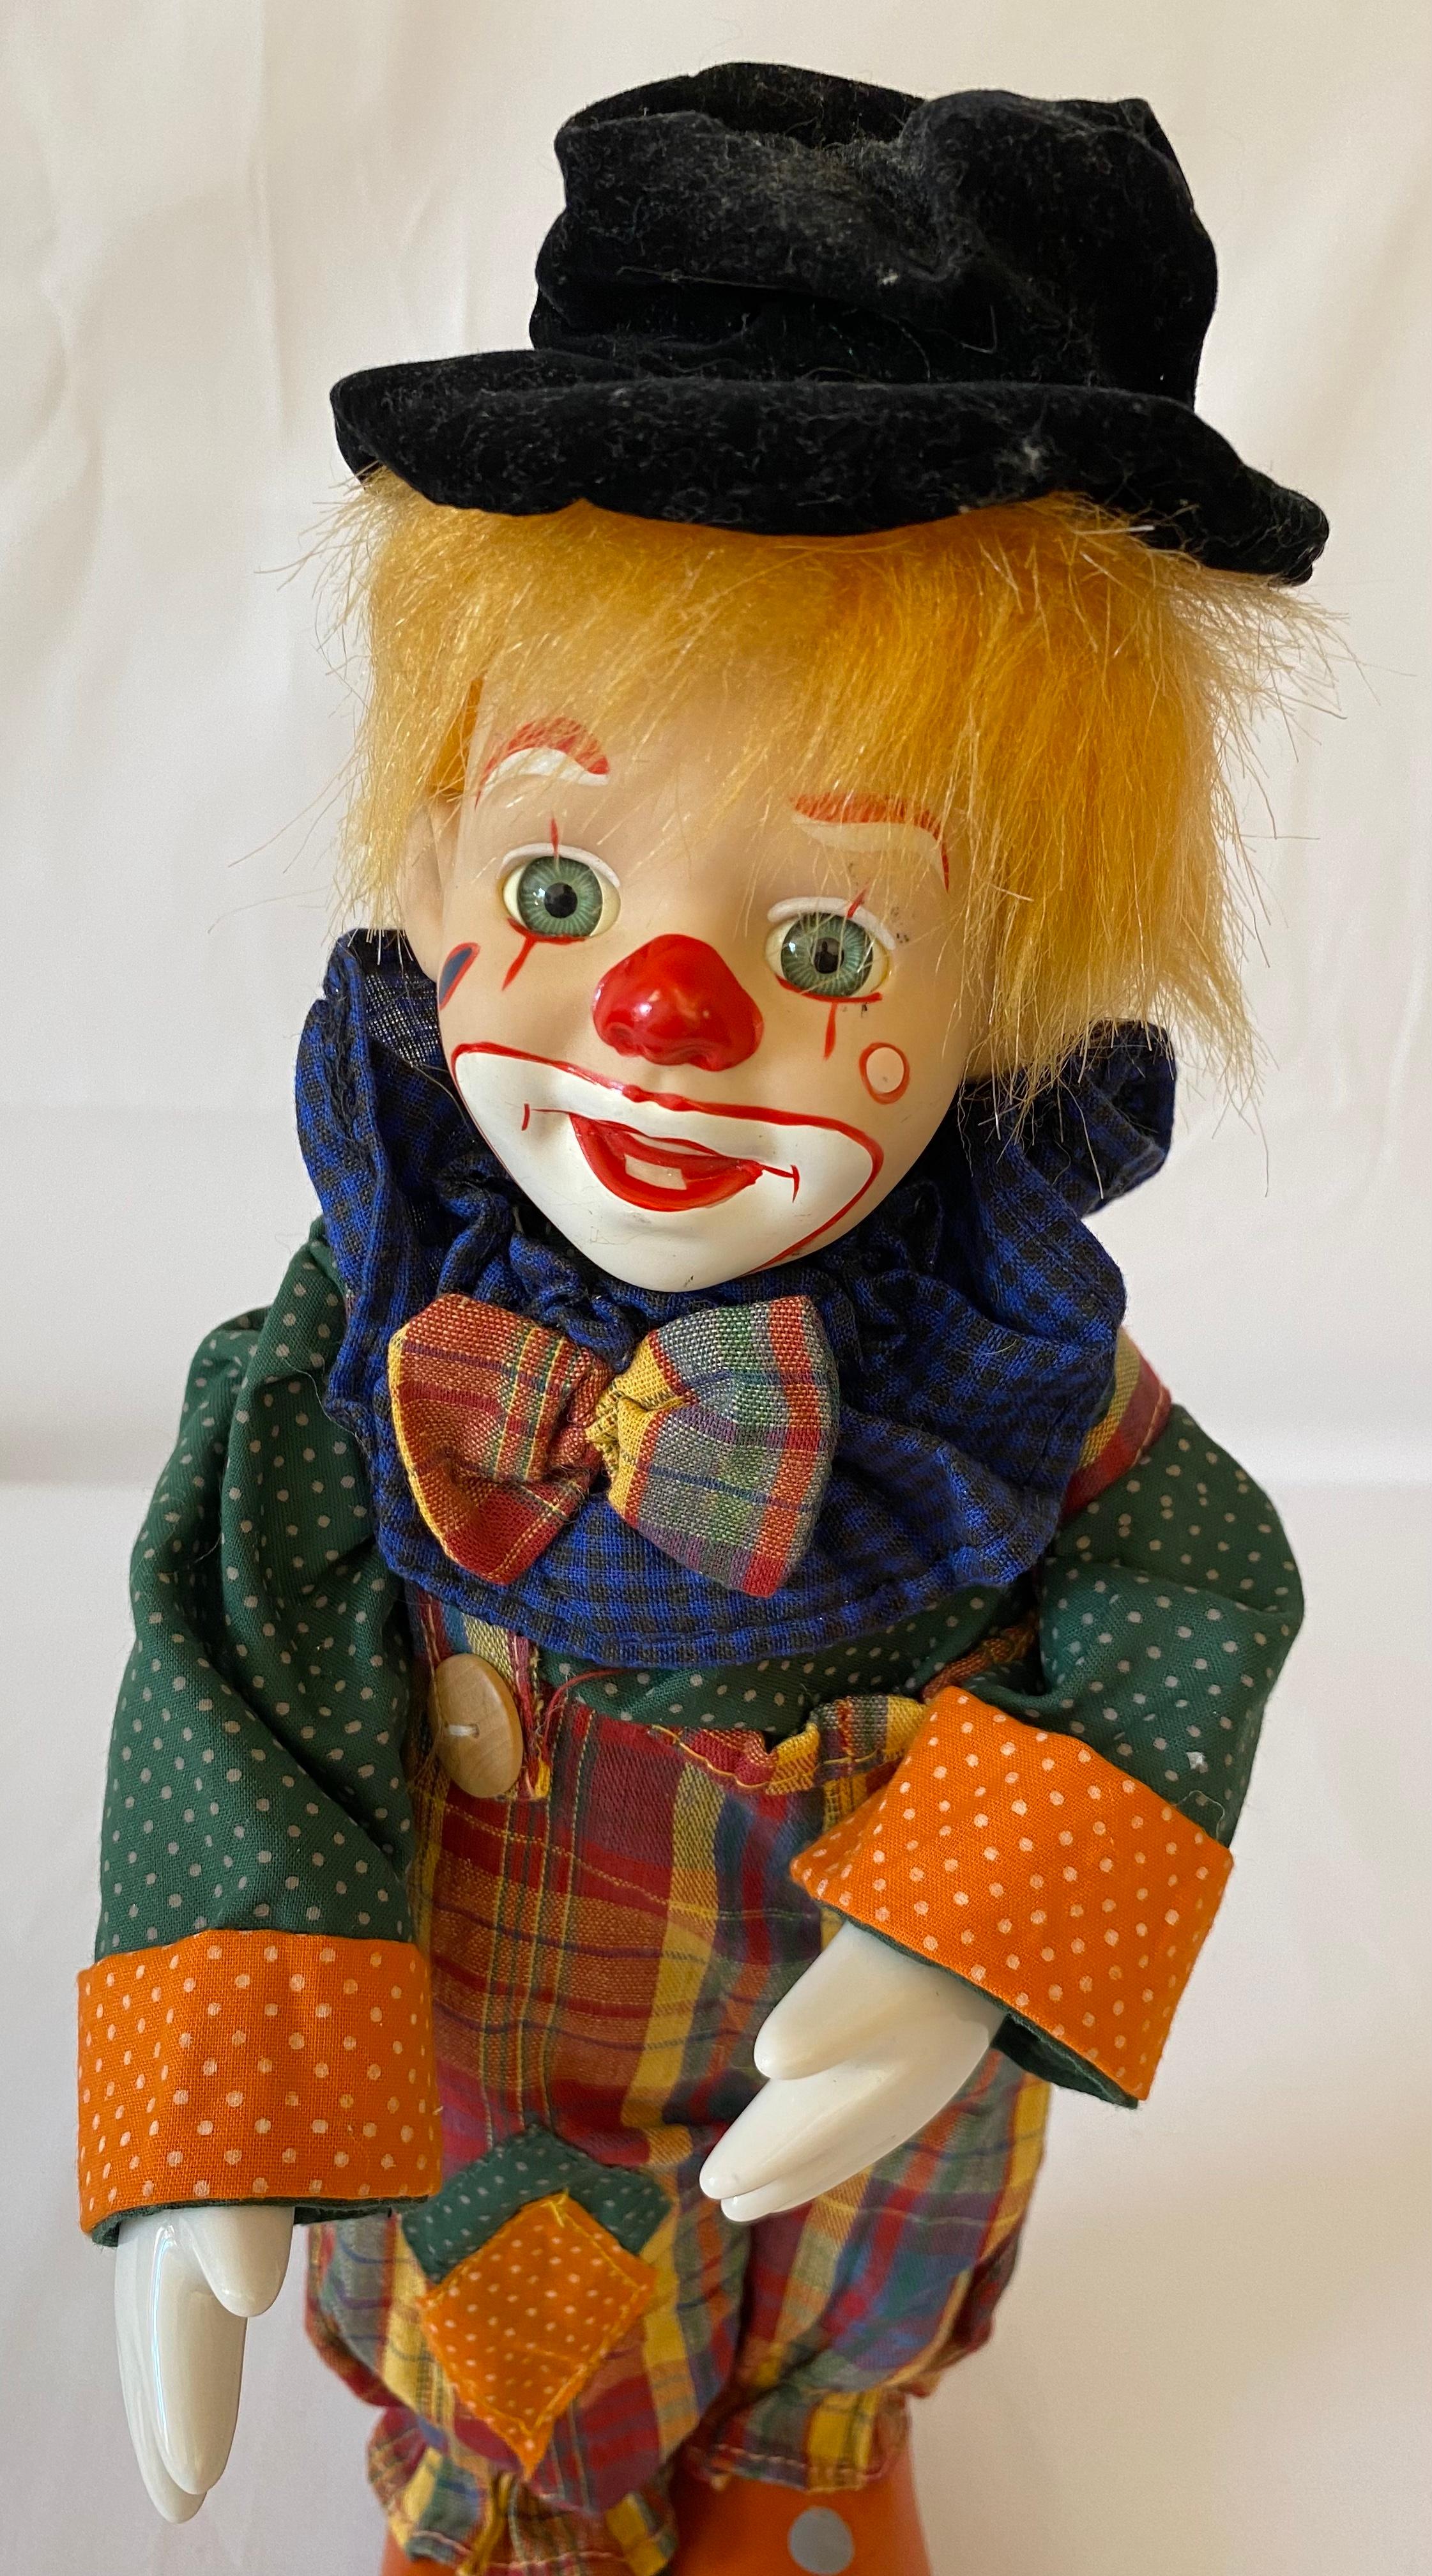 Eine feine Qualität therapeutischen musikalischen Automat Clown Spielzeug in wunderbaren Vintage Zustand.
Mit Kopf, Händen und Füßen aus Porzellan. 
Sie wurde in den 1950er Jahren in Frankreich hergestellt und ist in einwandfreiem Zustand.
Beim